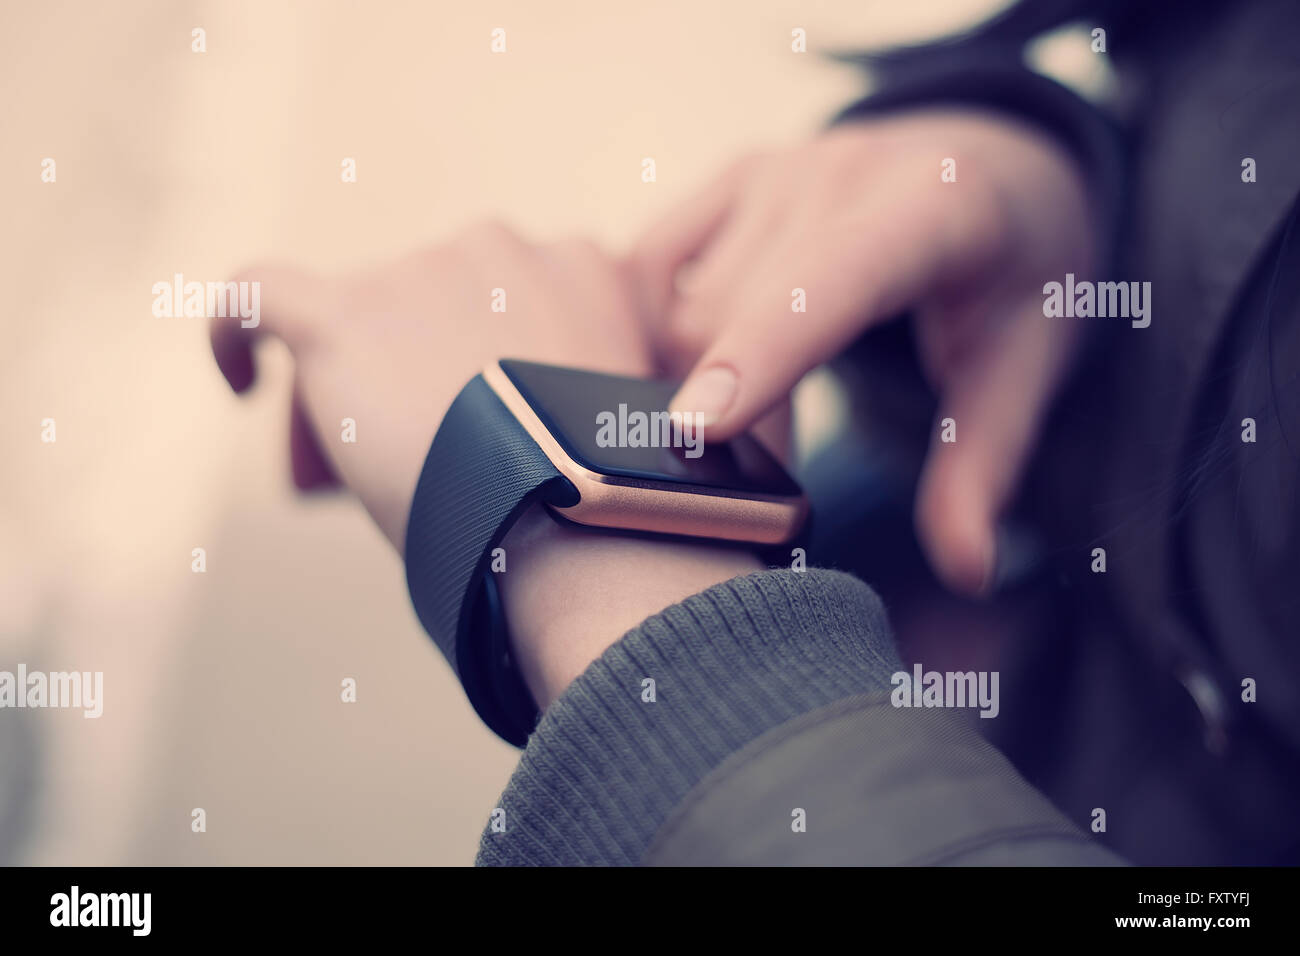 Manos femeninas touchgin su reloj de pulsera inteligente de moda. Este nuevo gadget te permite estar siempre conectado a internet y a las redes de medios de comunicación social desde cualquier lugar que desee. Foto de stock